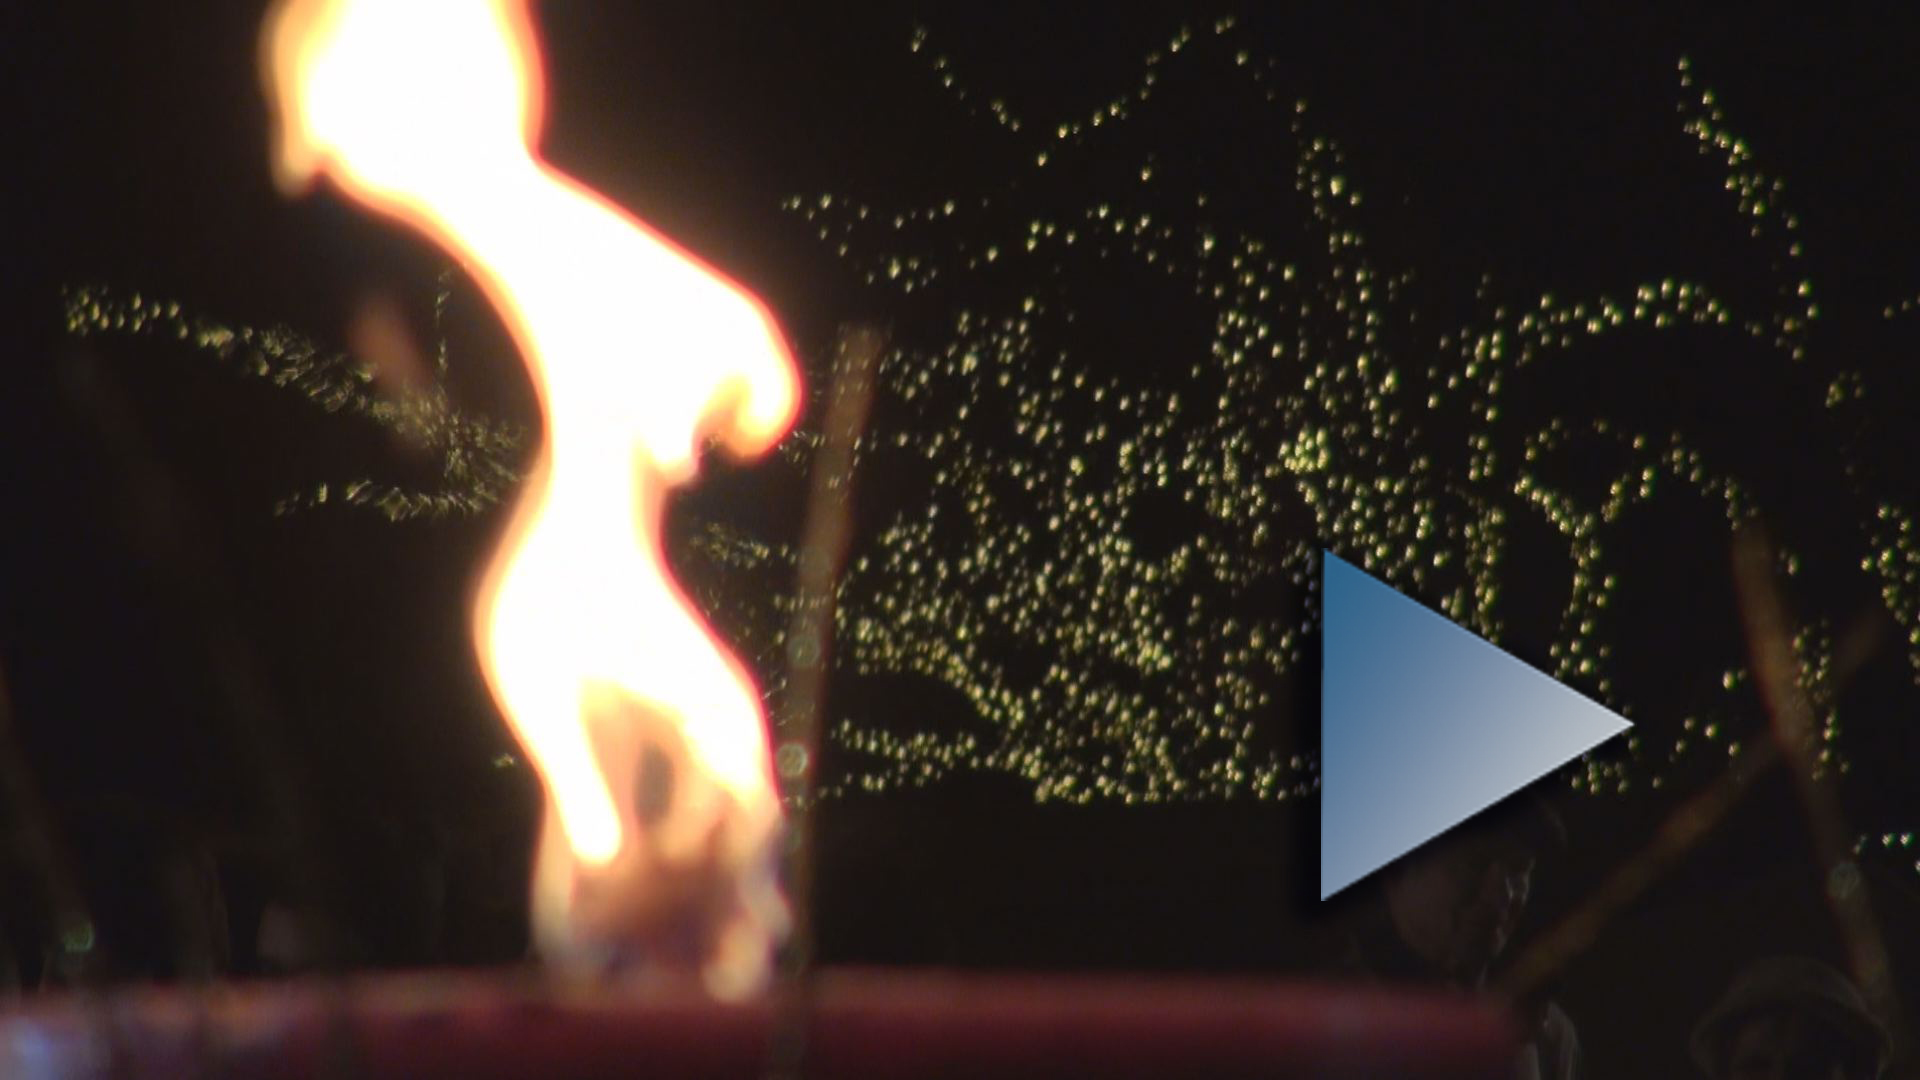 Az adventi gyertya lángja, háttérben ezernyi csillagként világítanak az ünnepi díszkivilágítáas parányi égői. Ha a képre kattint, a videó oldalára jut.